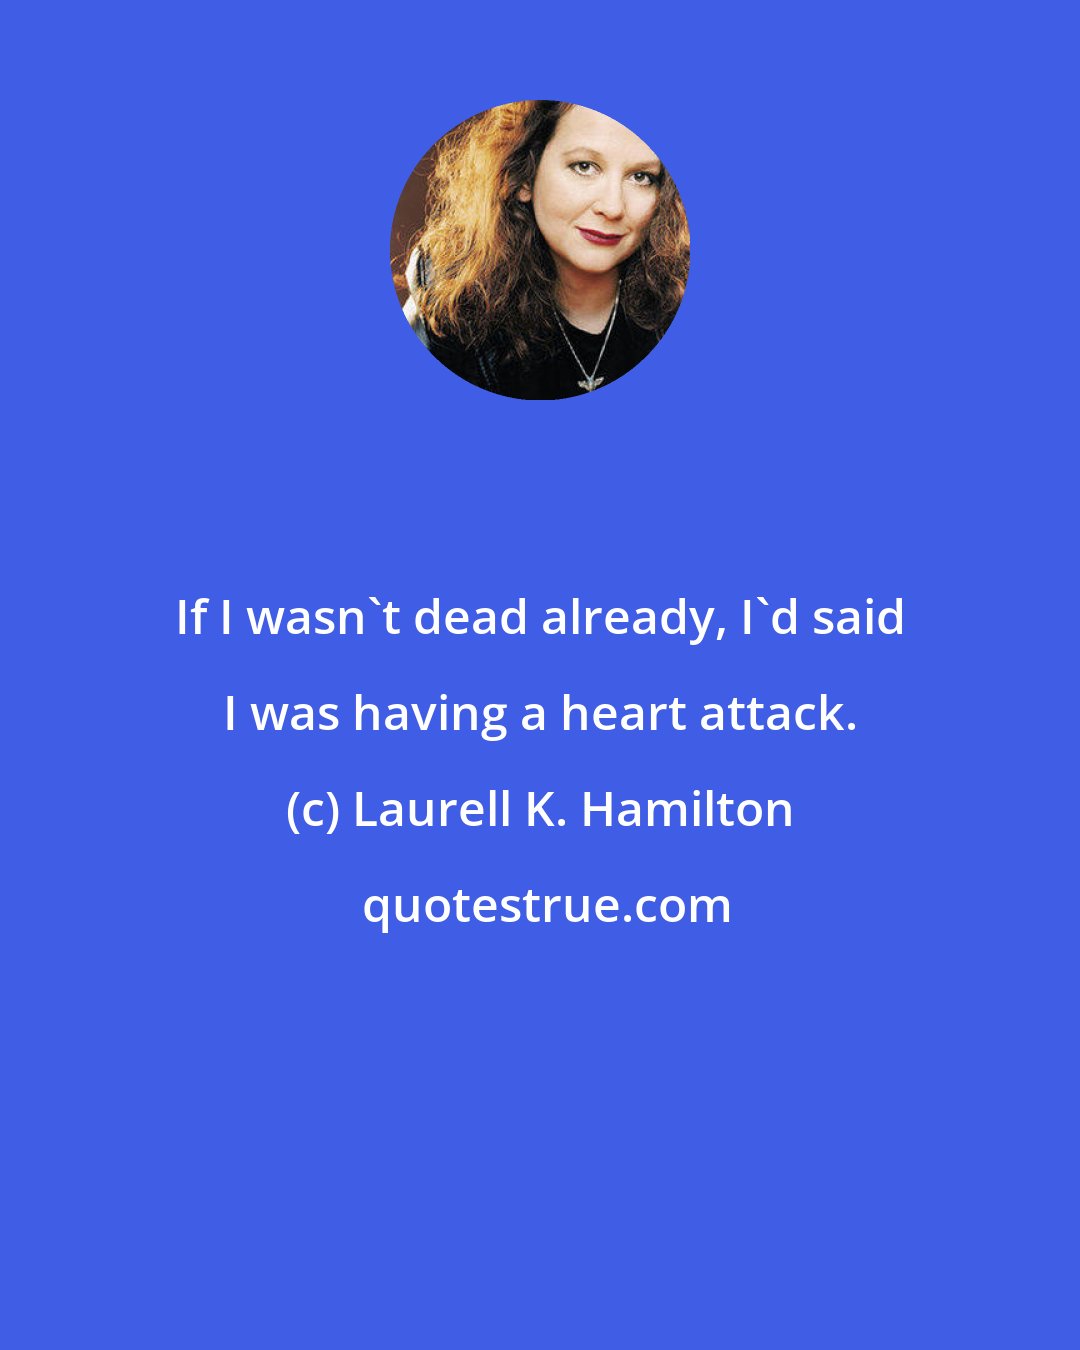 Laurell K. Hamilton: If I wasn't dead already, I'd said I was having a heart attack.